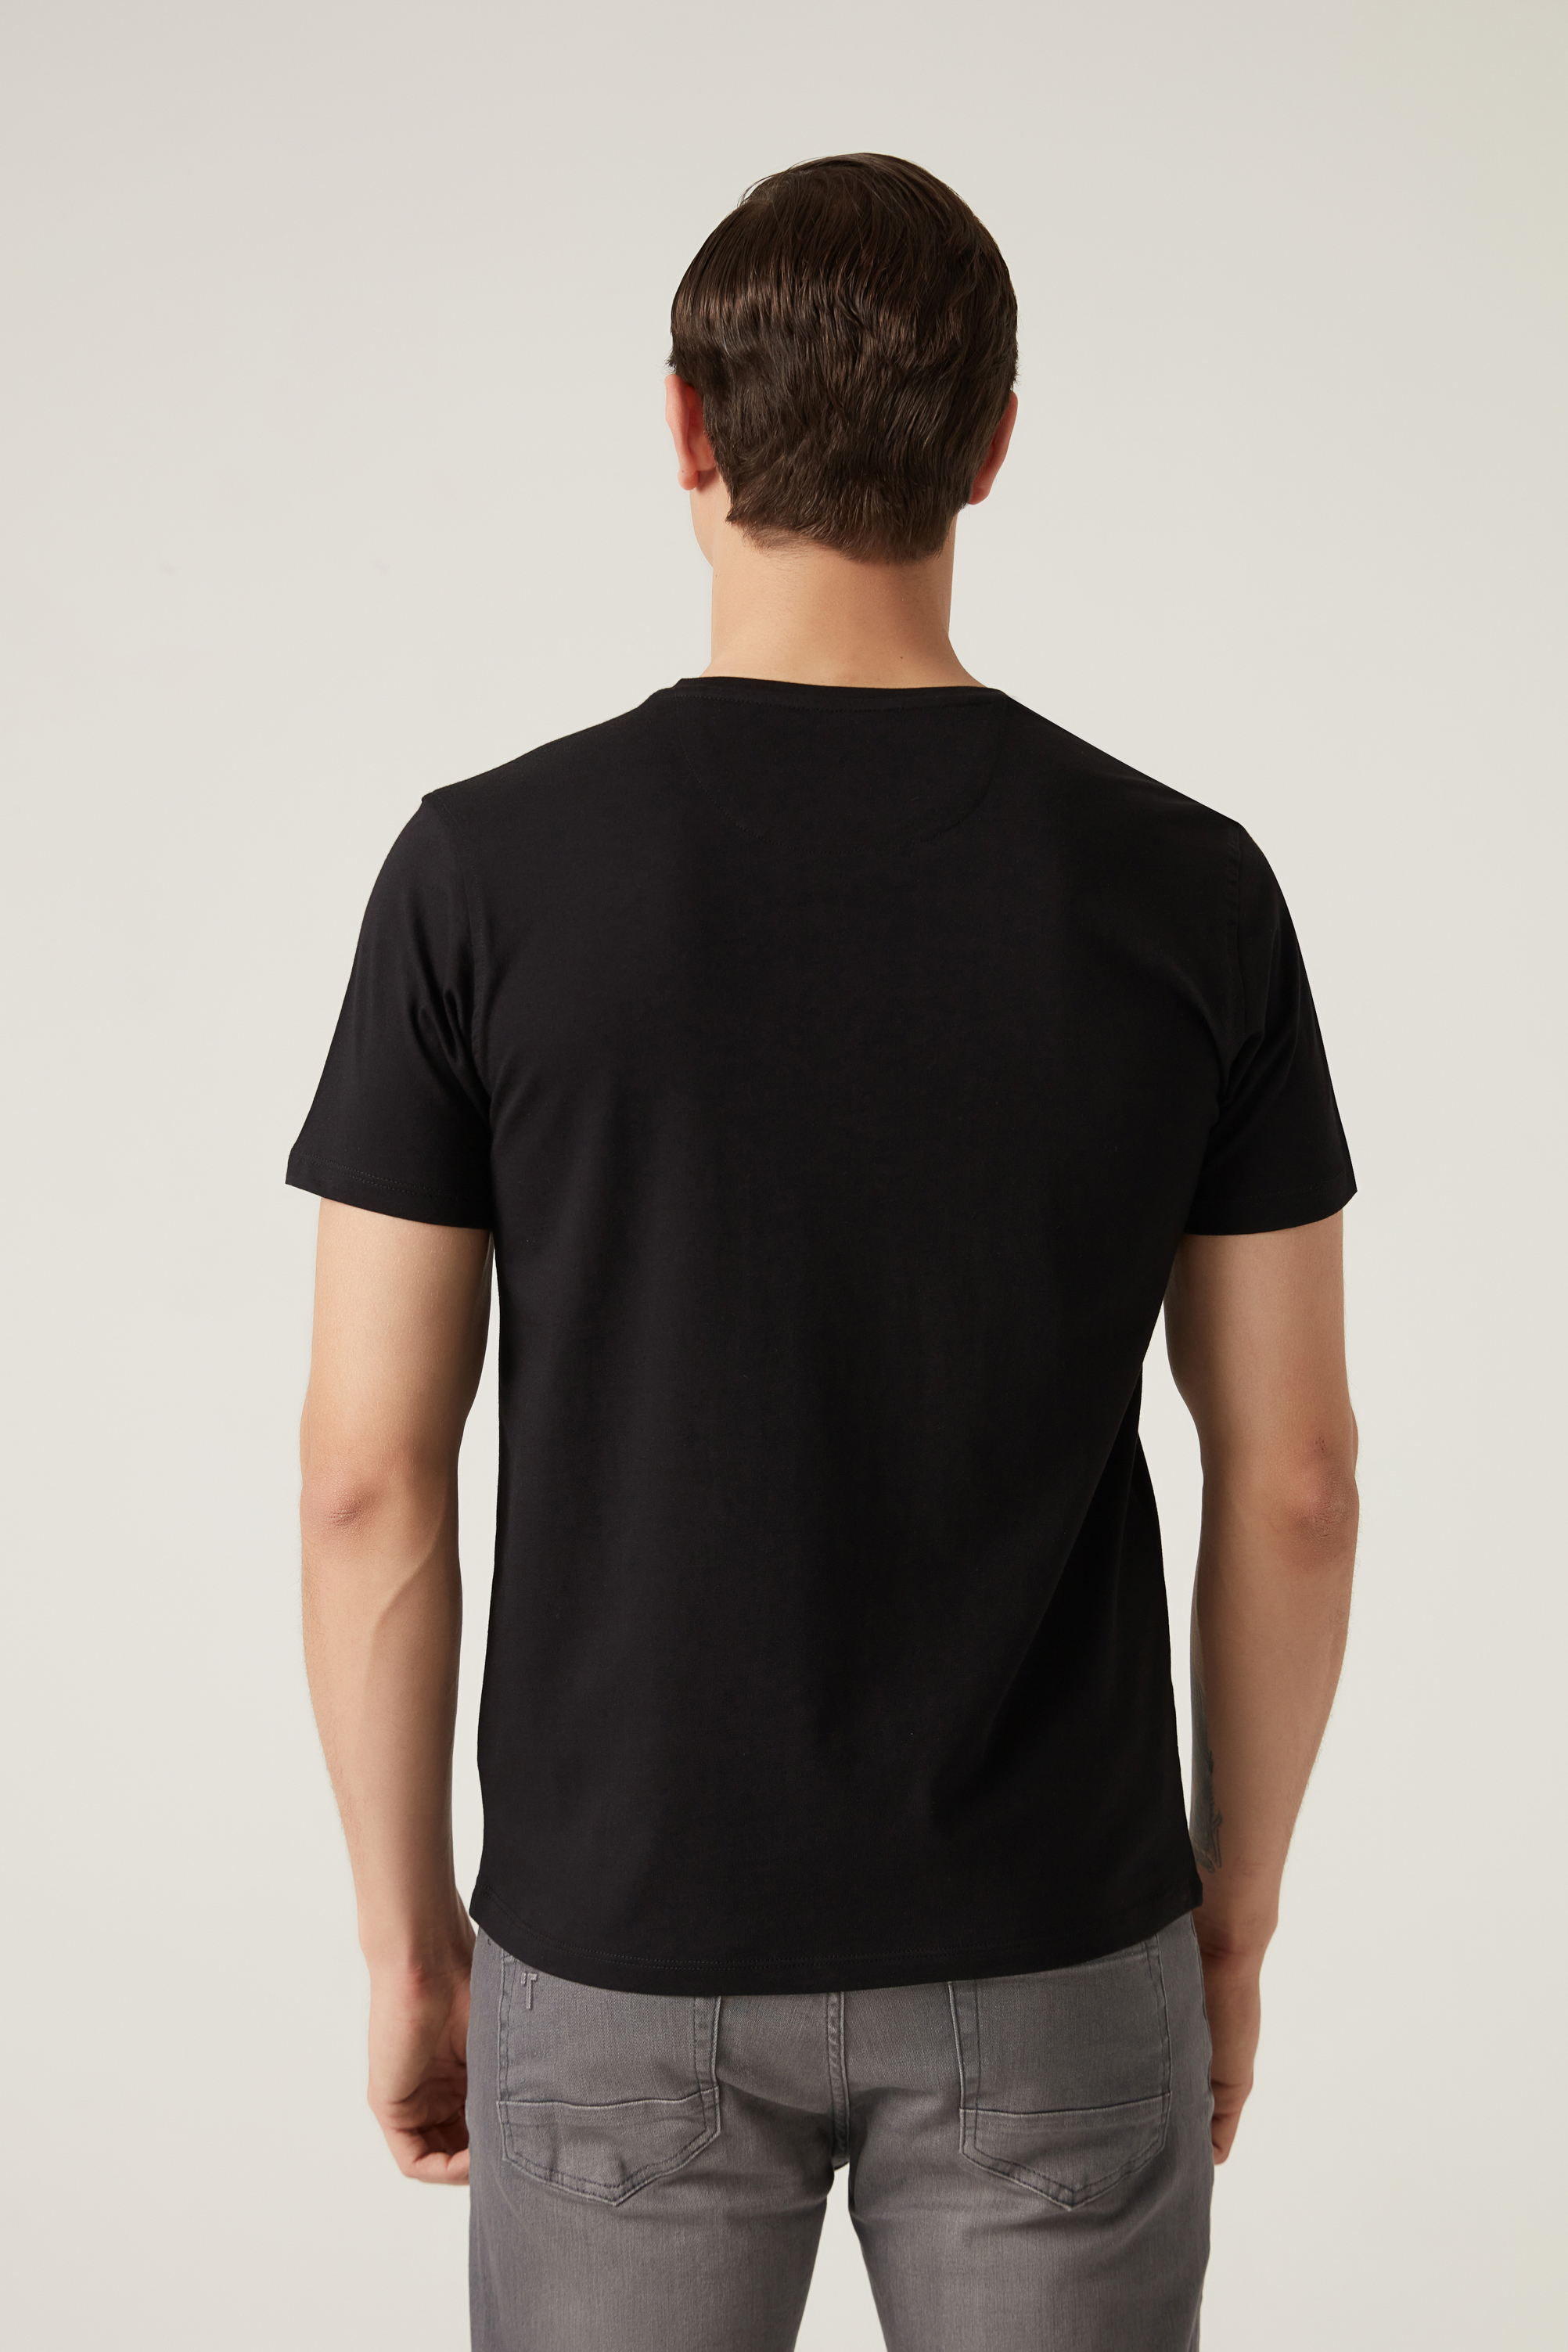 Damat Tween Damat Siyah %100 Pamuk T-Shirt. 4